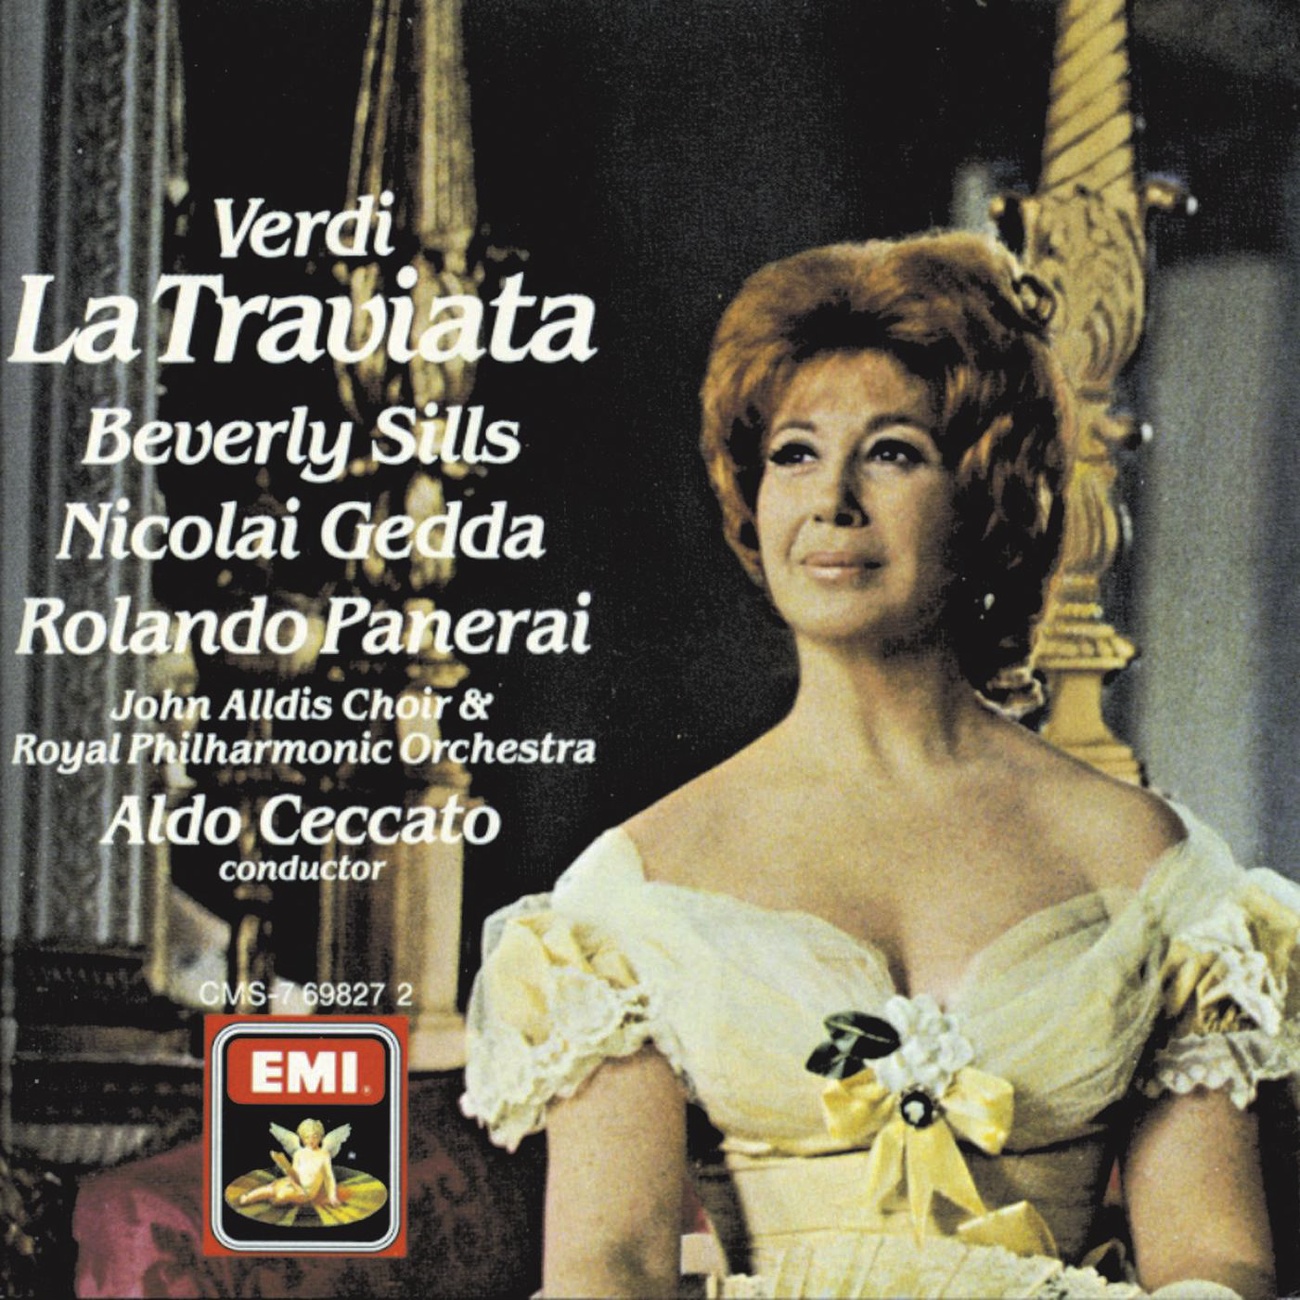 La Traviata (1988 Digital Remaster), Act III: Largo al quadrupede (Coro di Maschere)